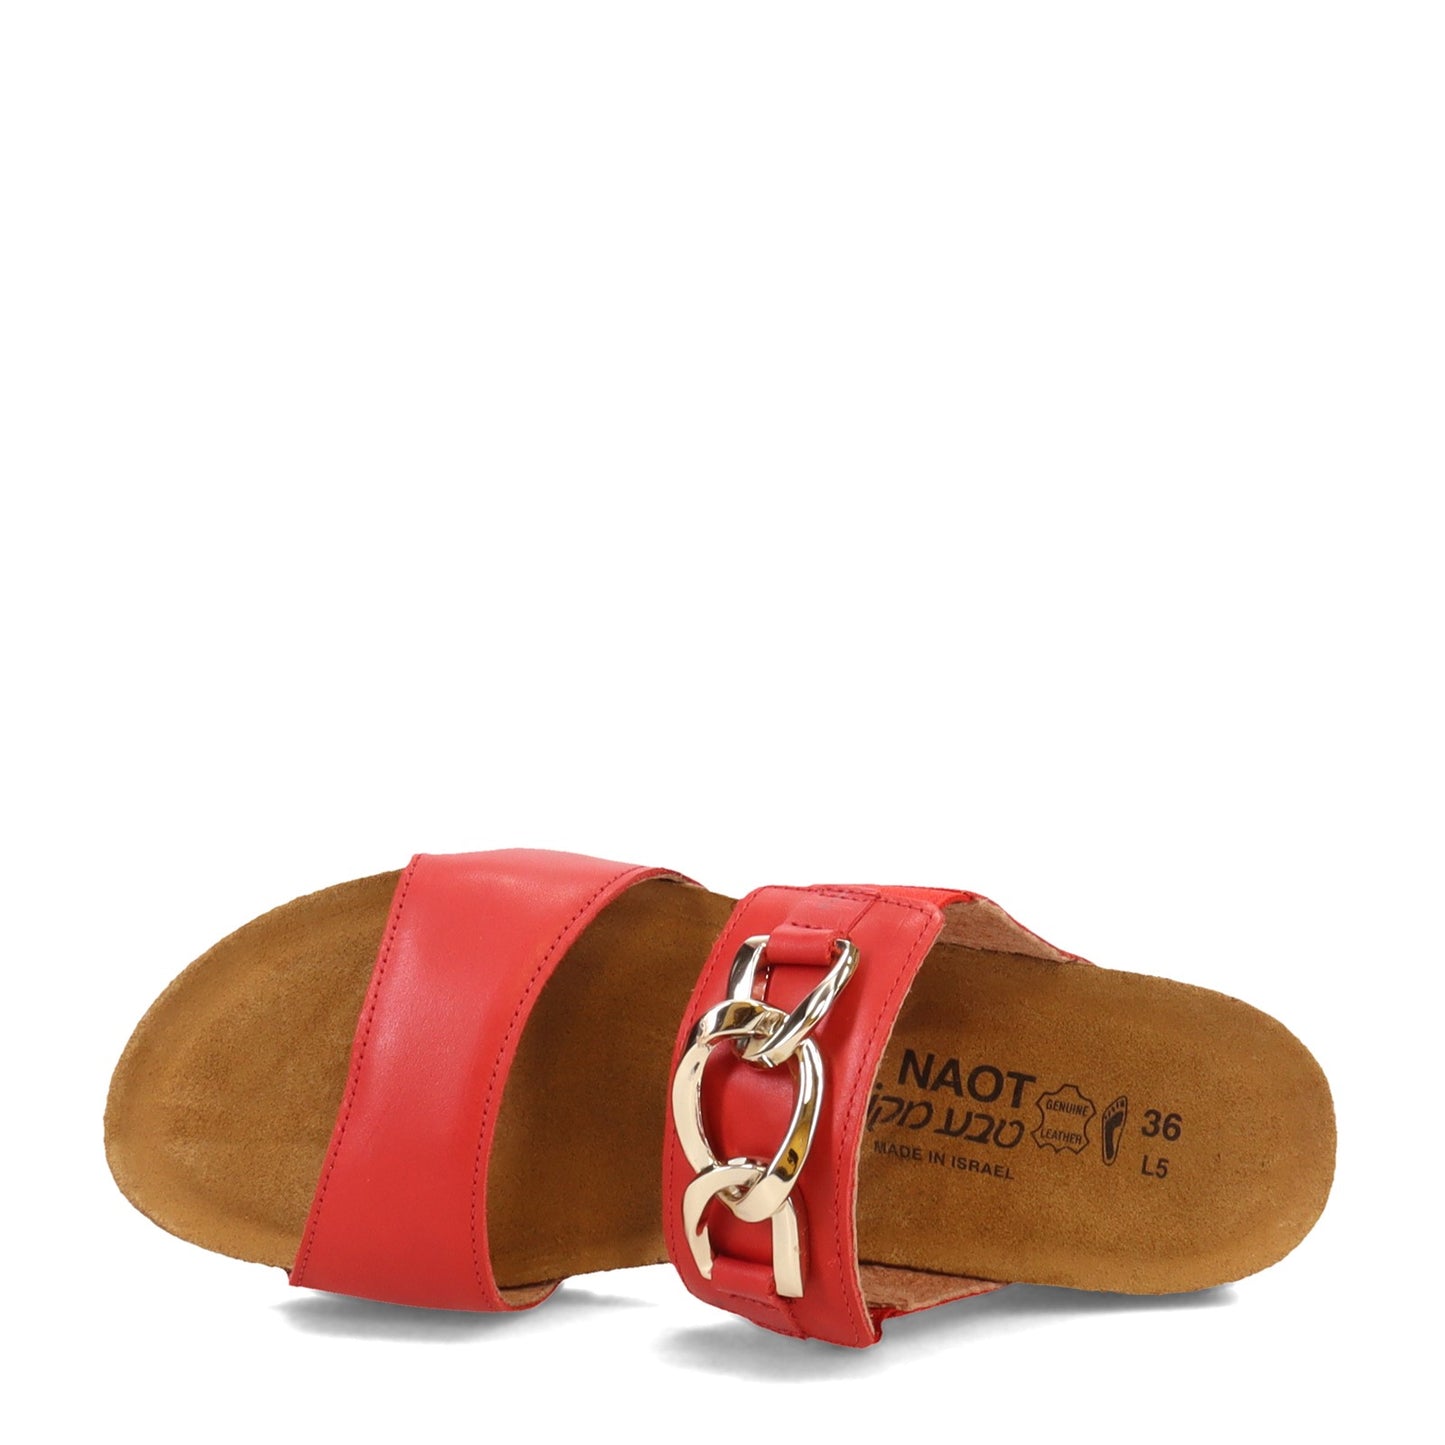 Peltz Shoes  Women's Naot Victoria Sandal Kiss Red 4470-C60